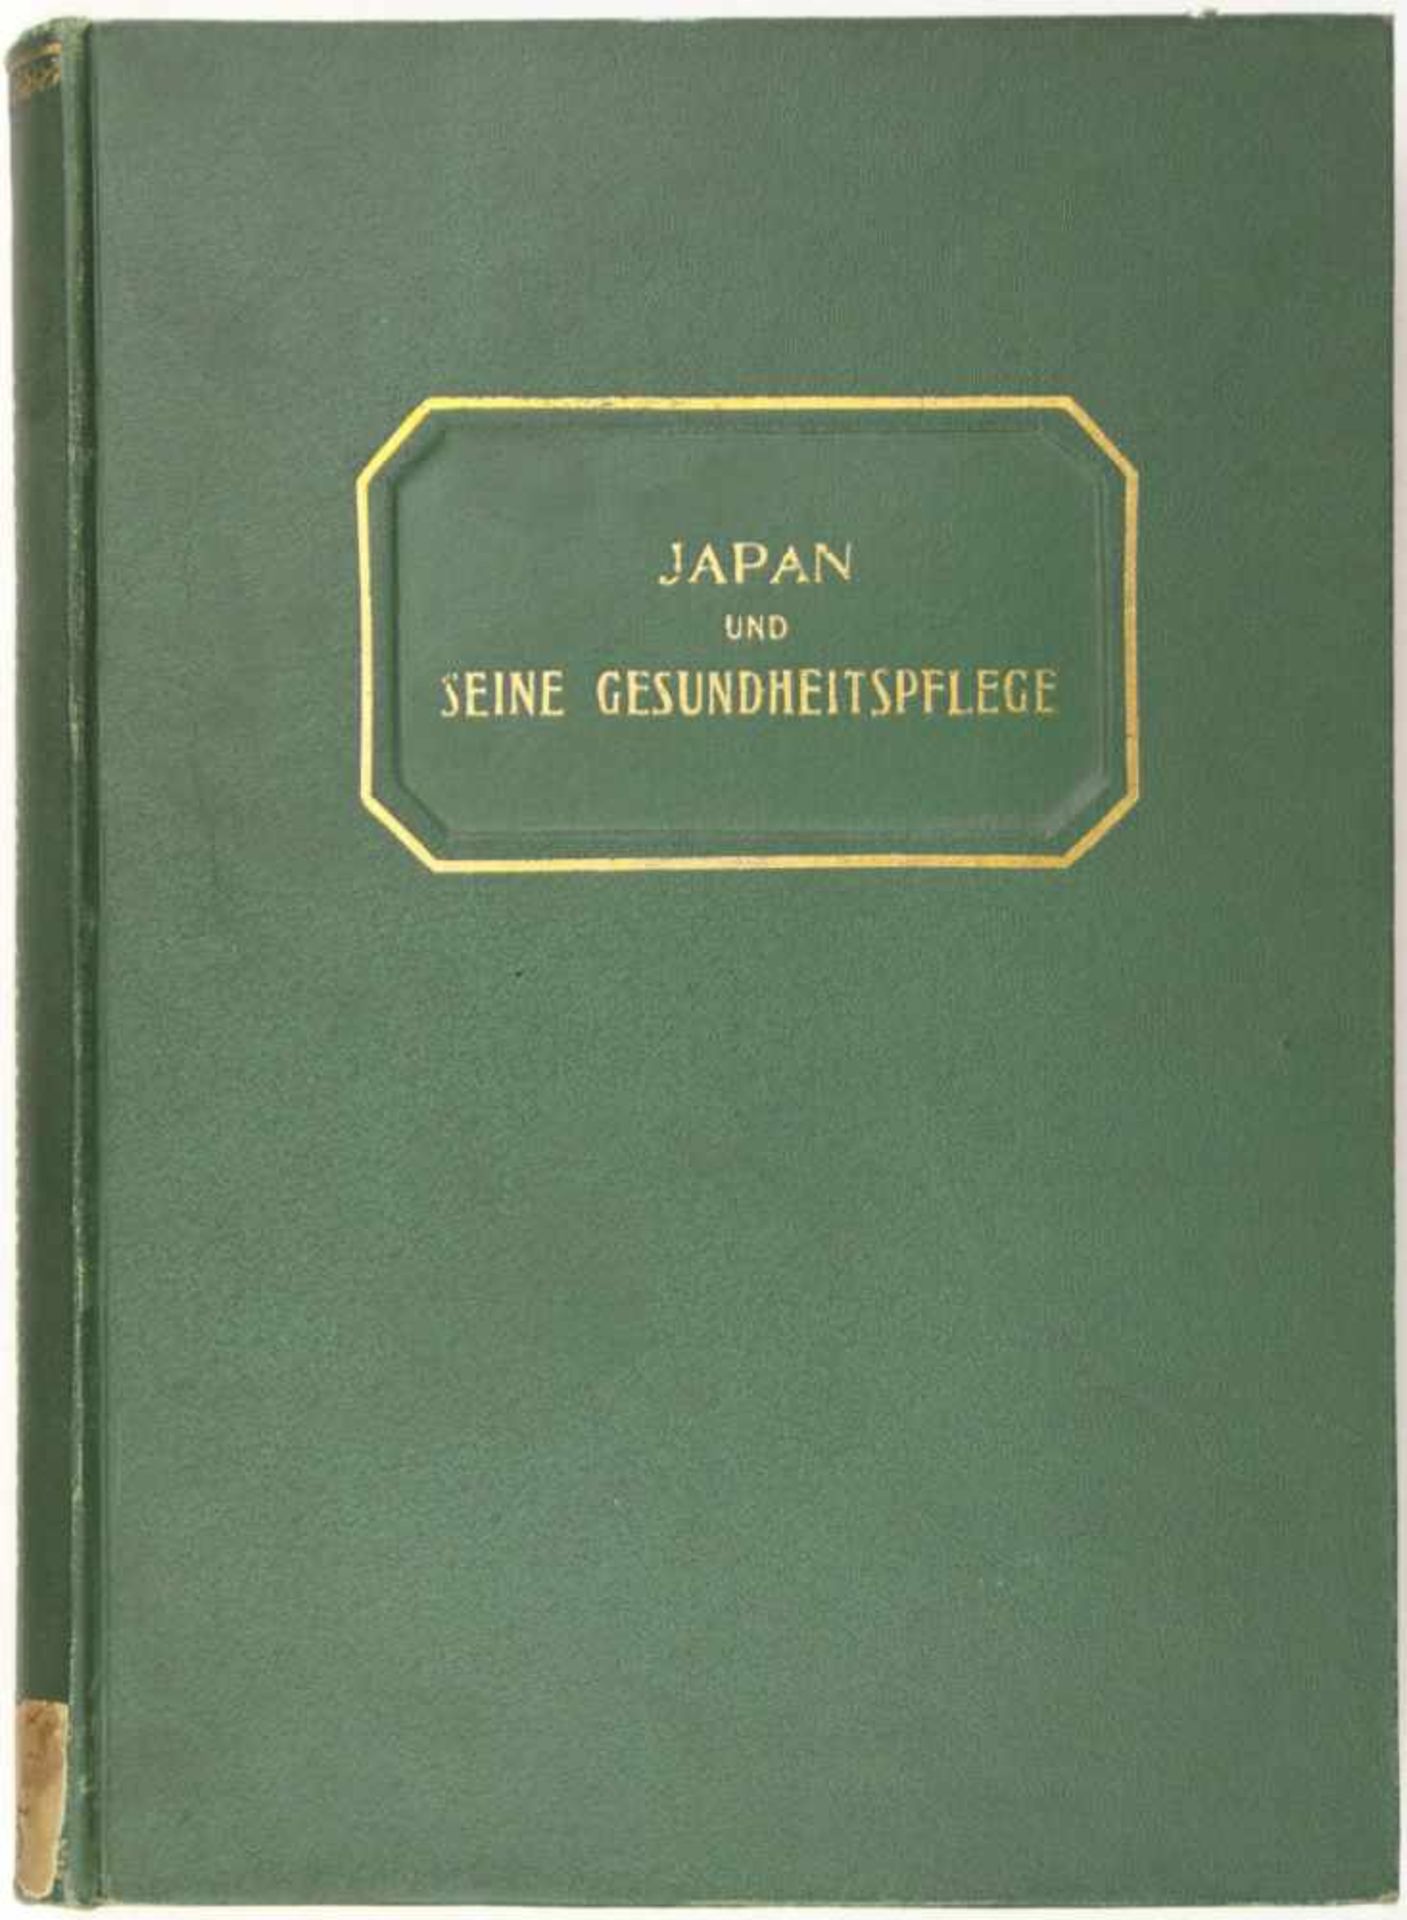 Japan. -Mori, Rintaro:Japan und seine Gesundheitspflege. Tokyo, 1911. 417 S., 1 nn. Bl. 27,5 x 20